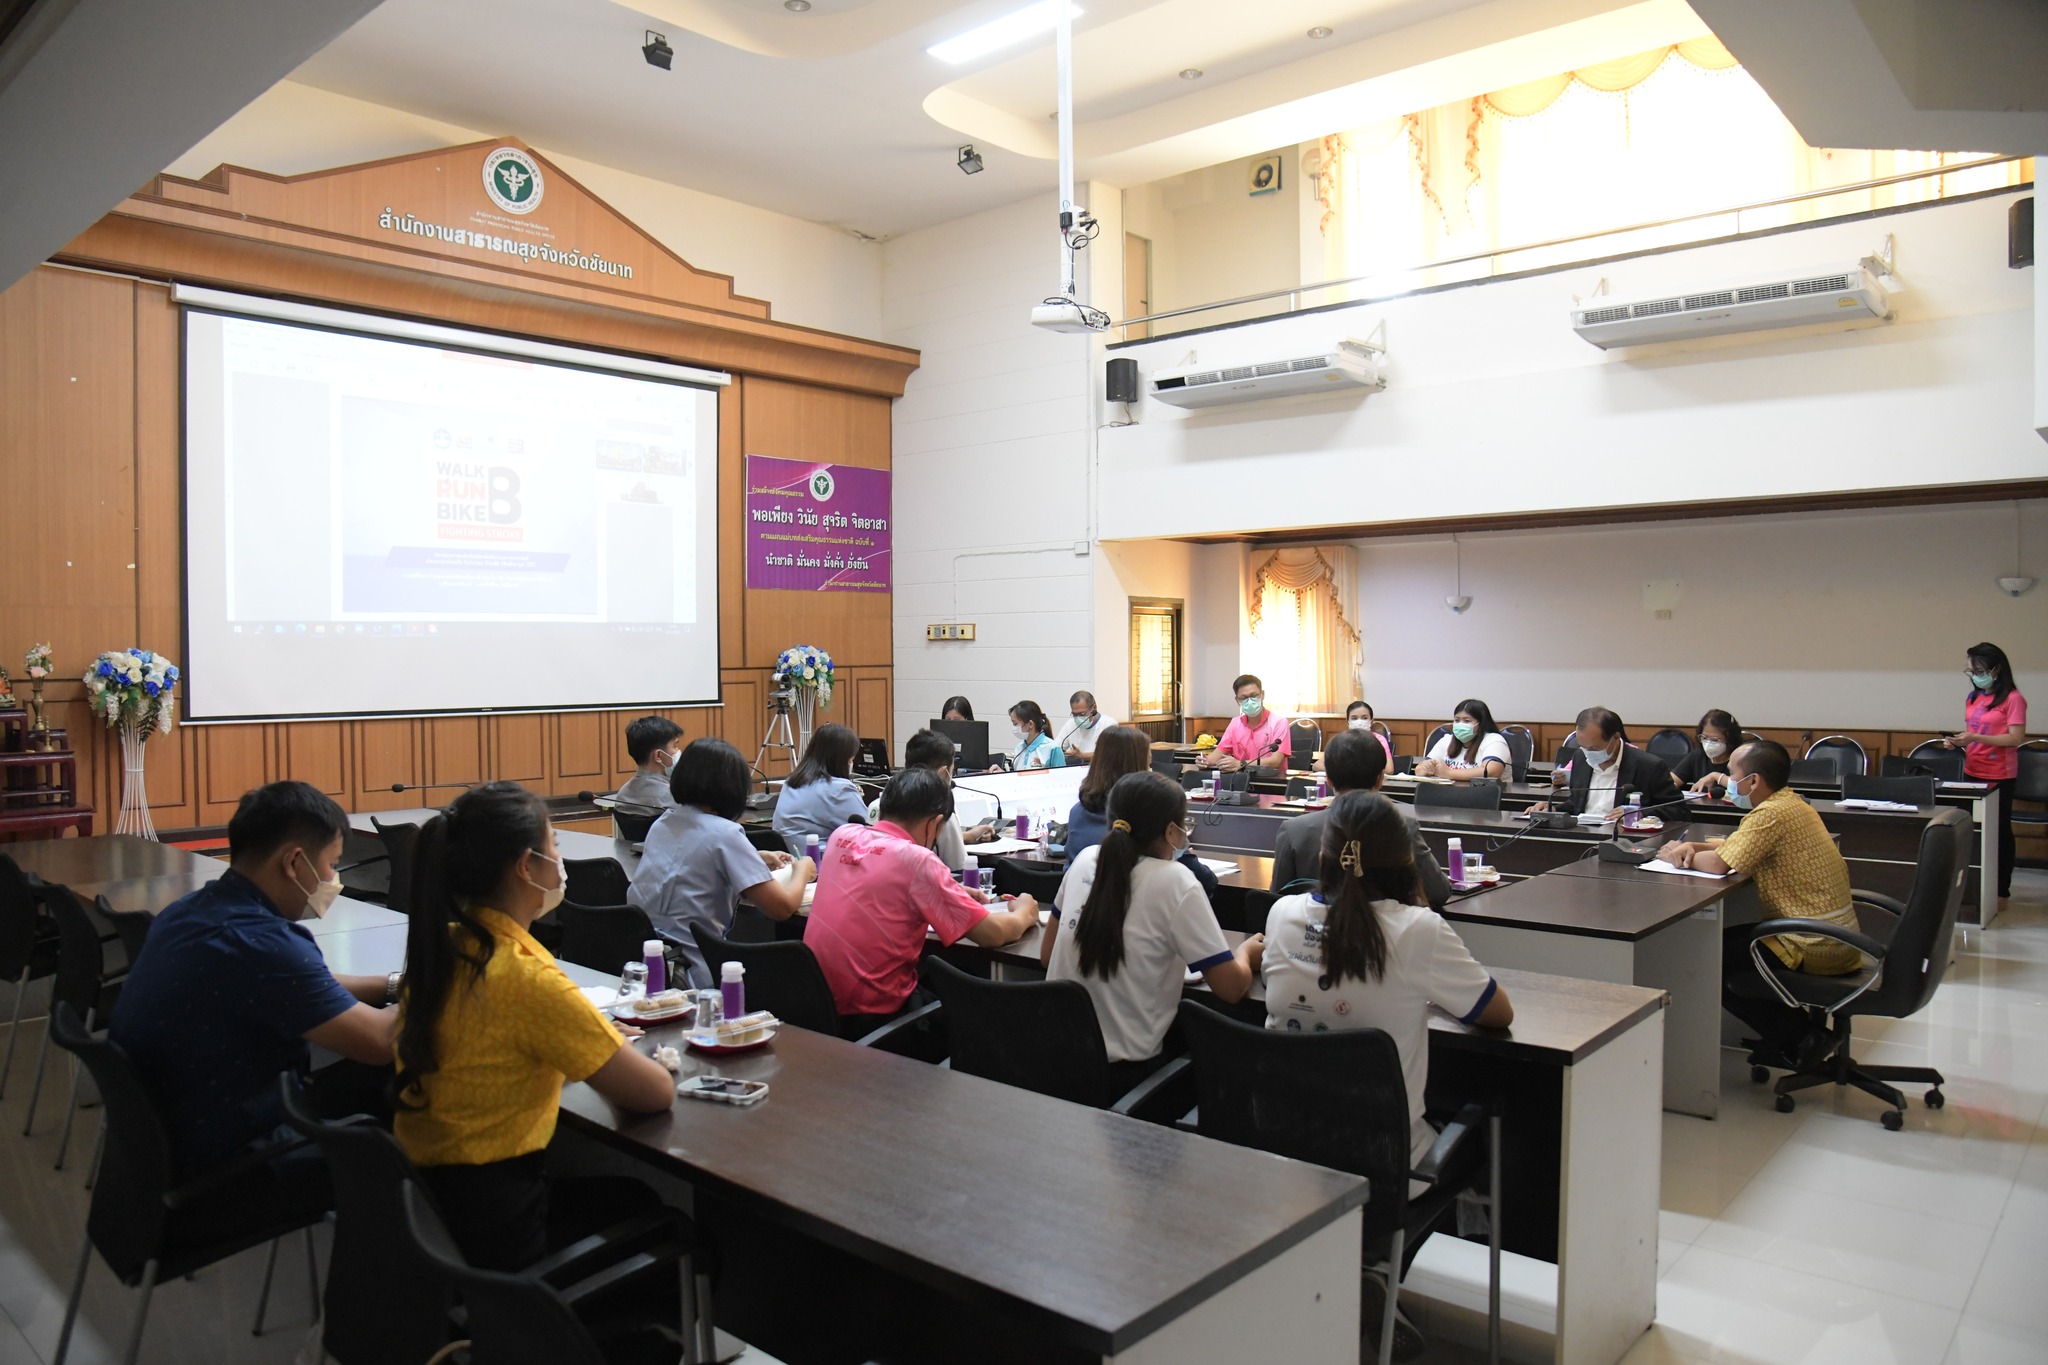 รอง นพ.สสจ.ชัยนาท เป็นประธานการประชุมการเตรียมความพร้อม โครงการแสงนำใจไทยทั้งชาติ เดิน วิ่ง ปั่น ป้องกันอัมพาตครั้งที่ 8 เฉลิมพระเกียรติ "แผ่นดินไทยไร้สโตรค"   ผ่านระบบ Web Conference